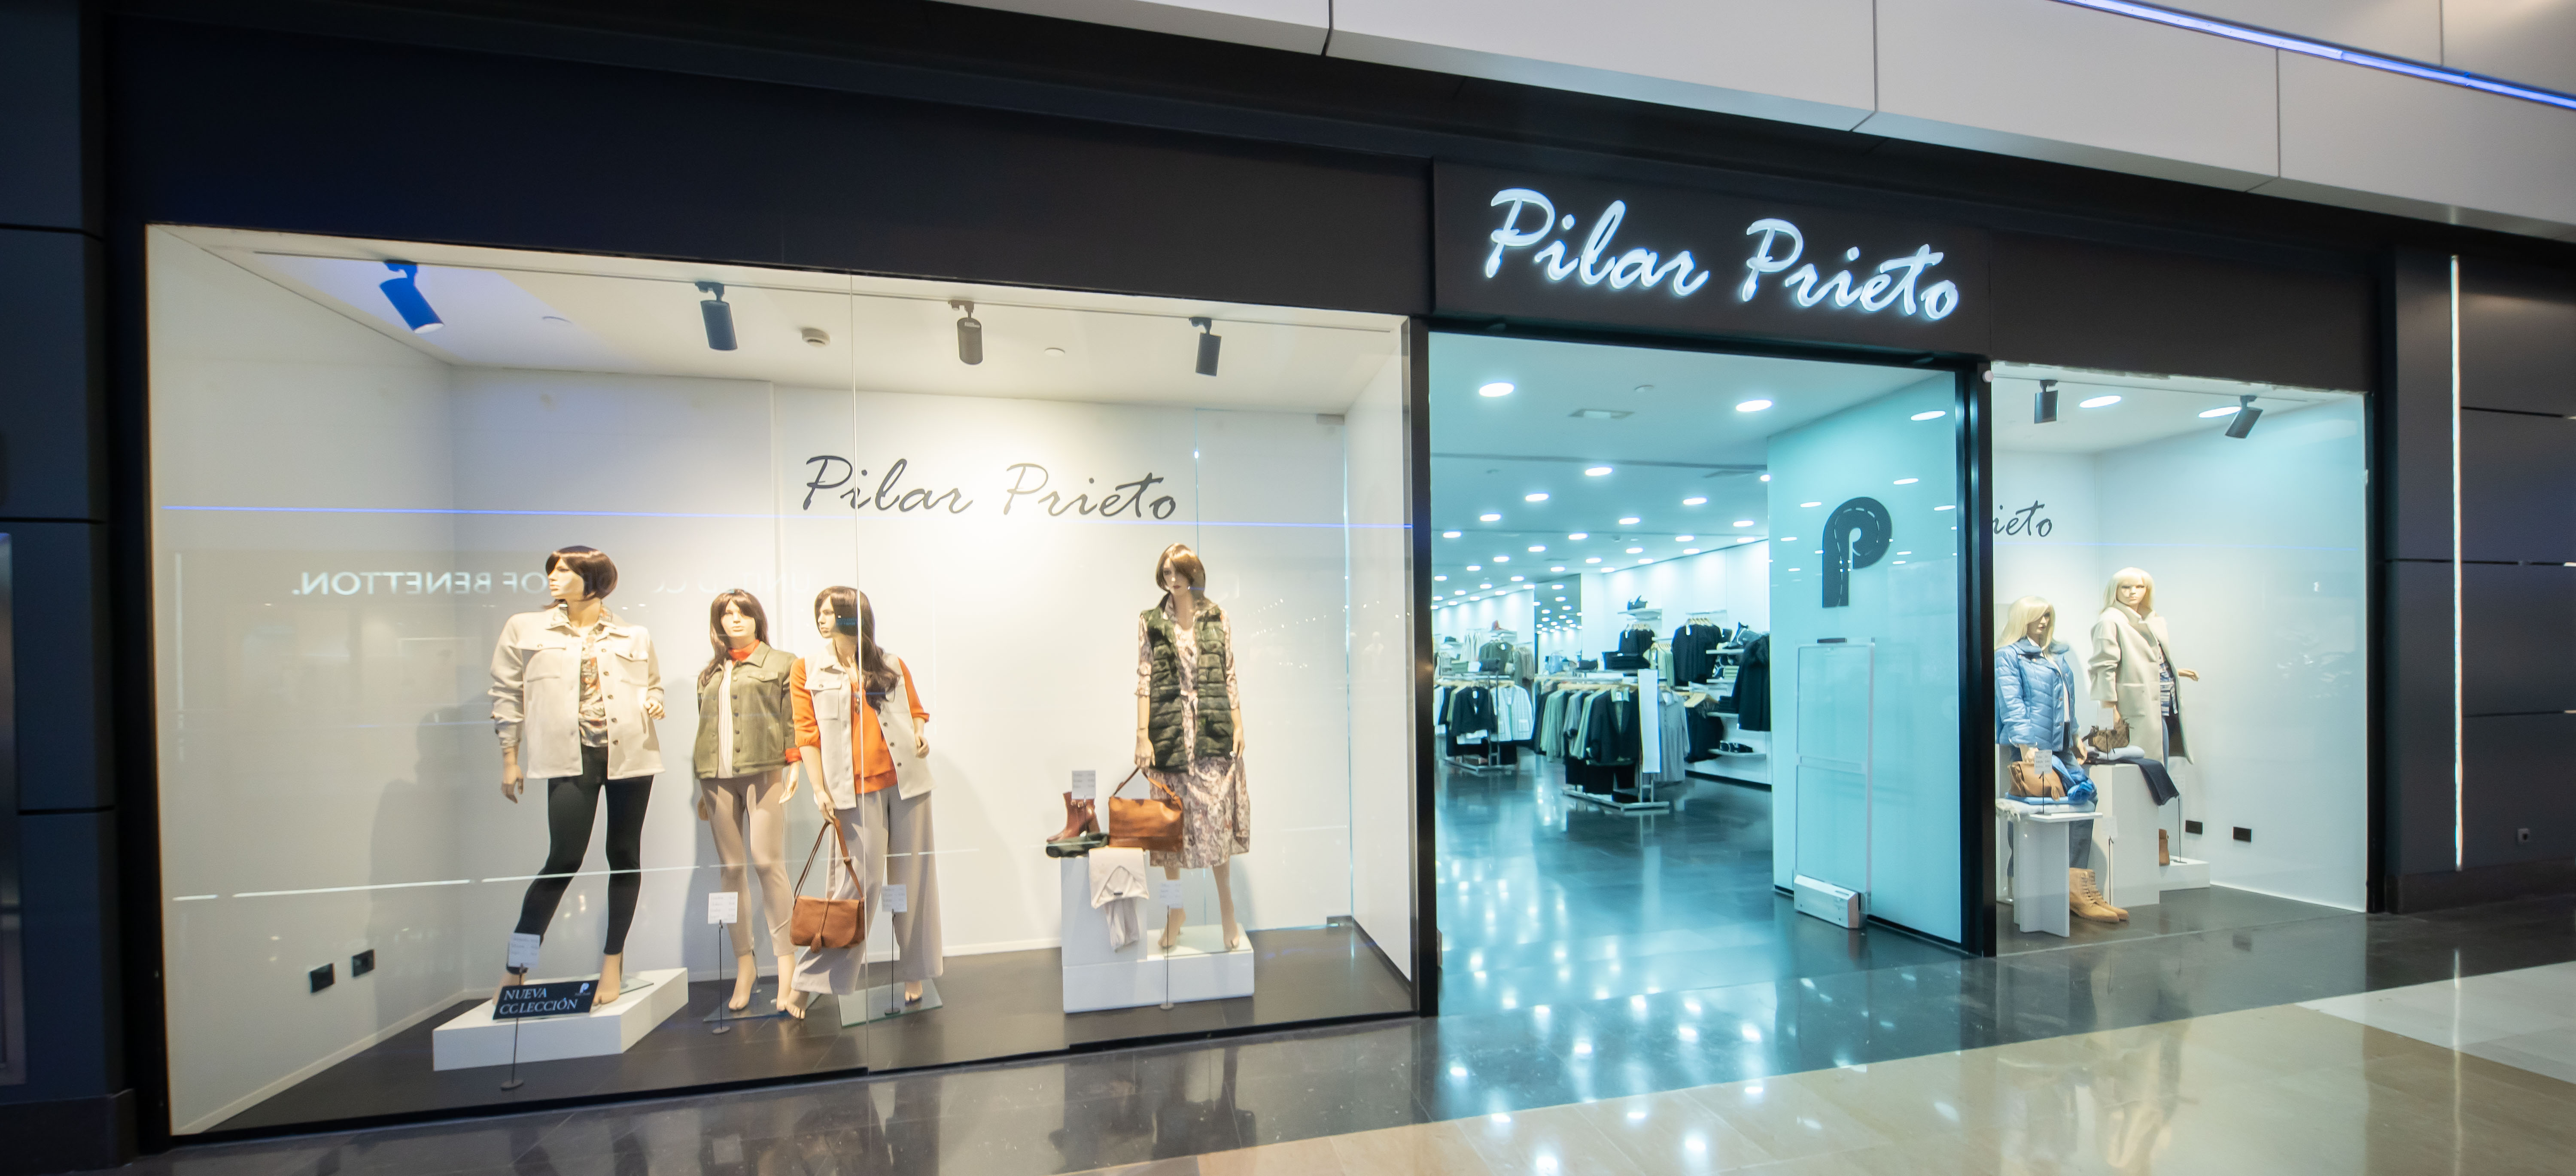 Prieto abre su primera tienda | Llobregat